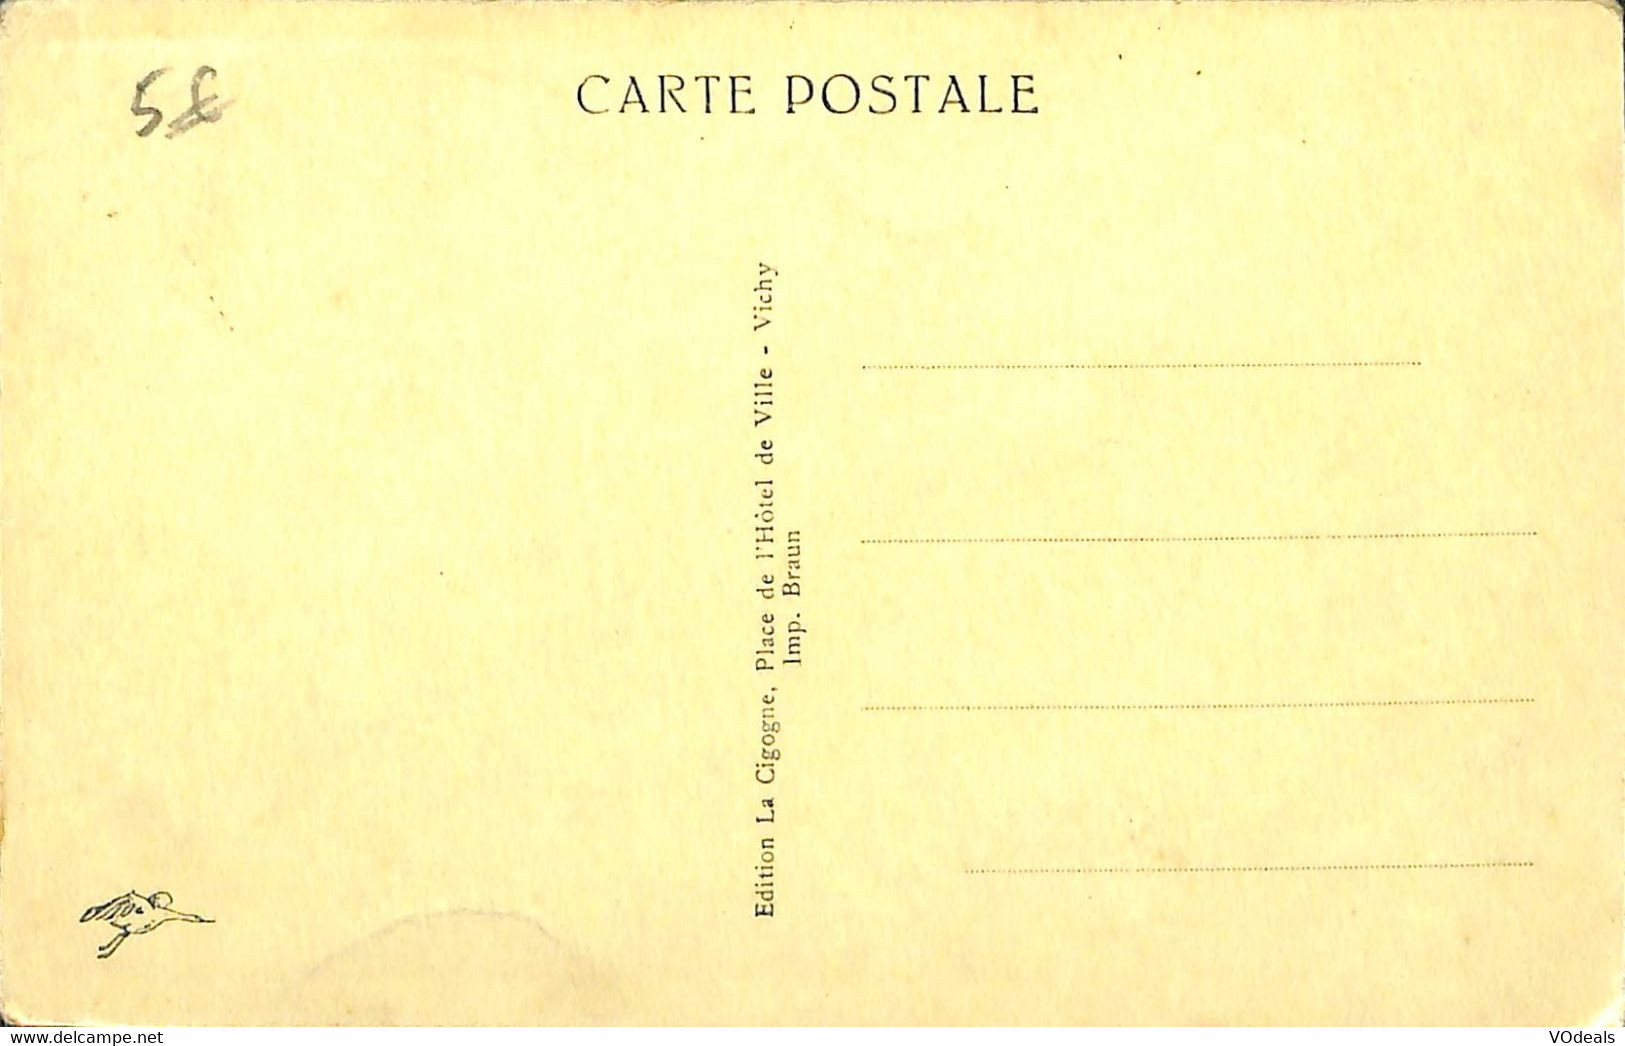 032 524 - CPA - France - Eglise - lot de 5 cartes différentes